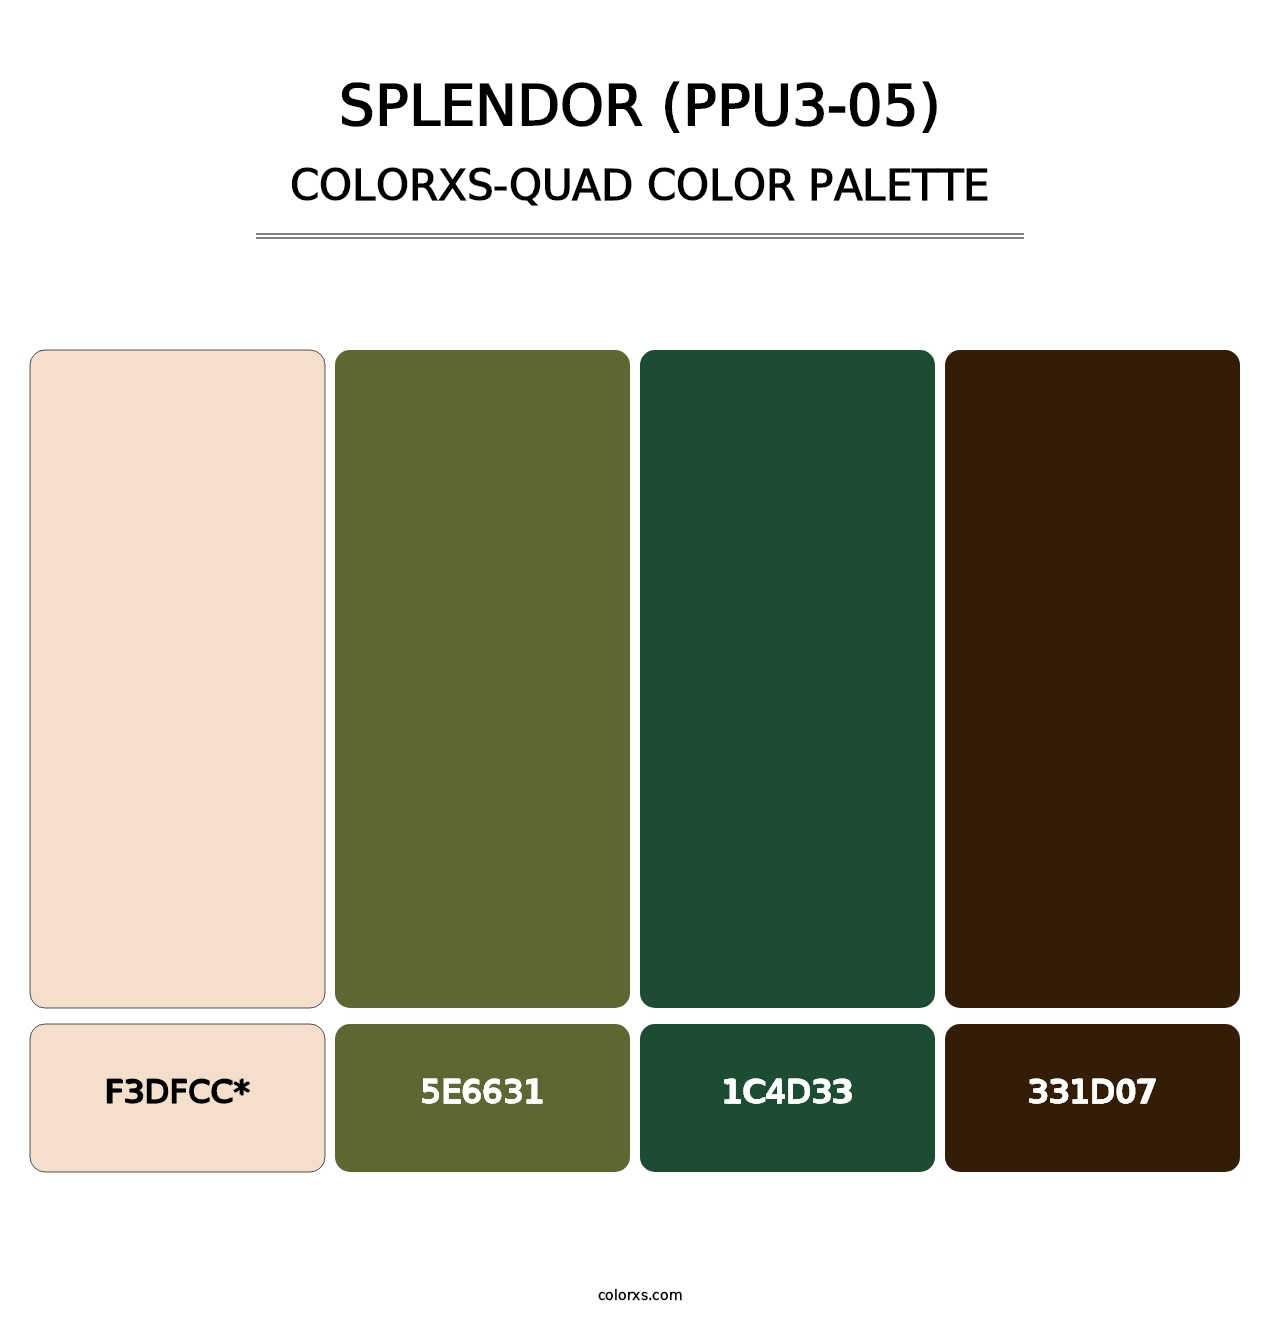 Splendor (PPU3-05) - Colorxs Quad Palette